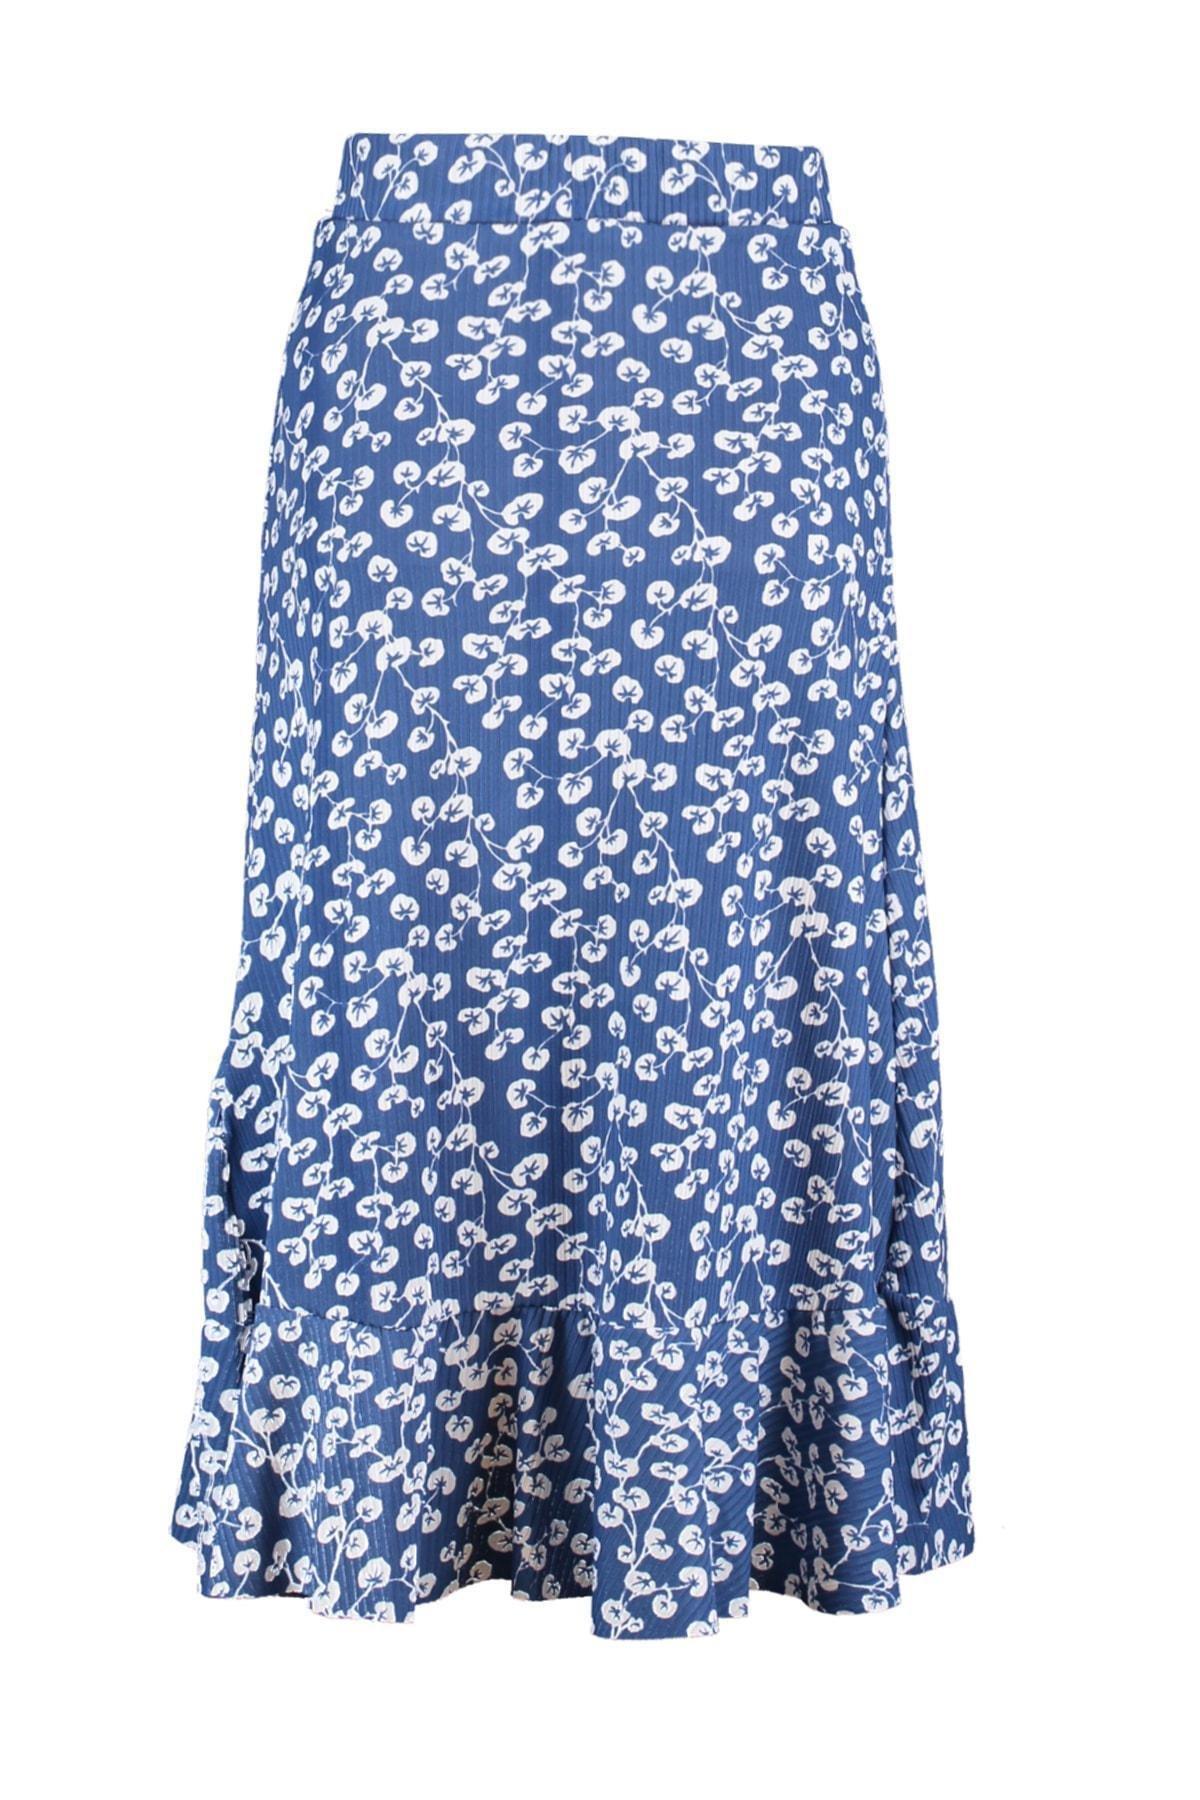 Trendyol - Blue A-Line Polka Dot Midi Skirt